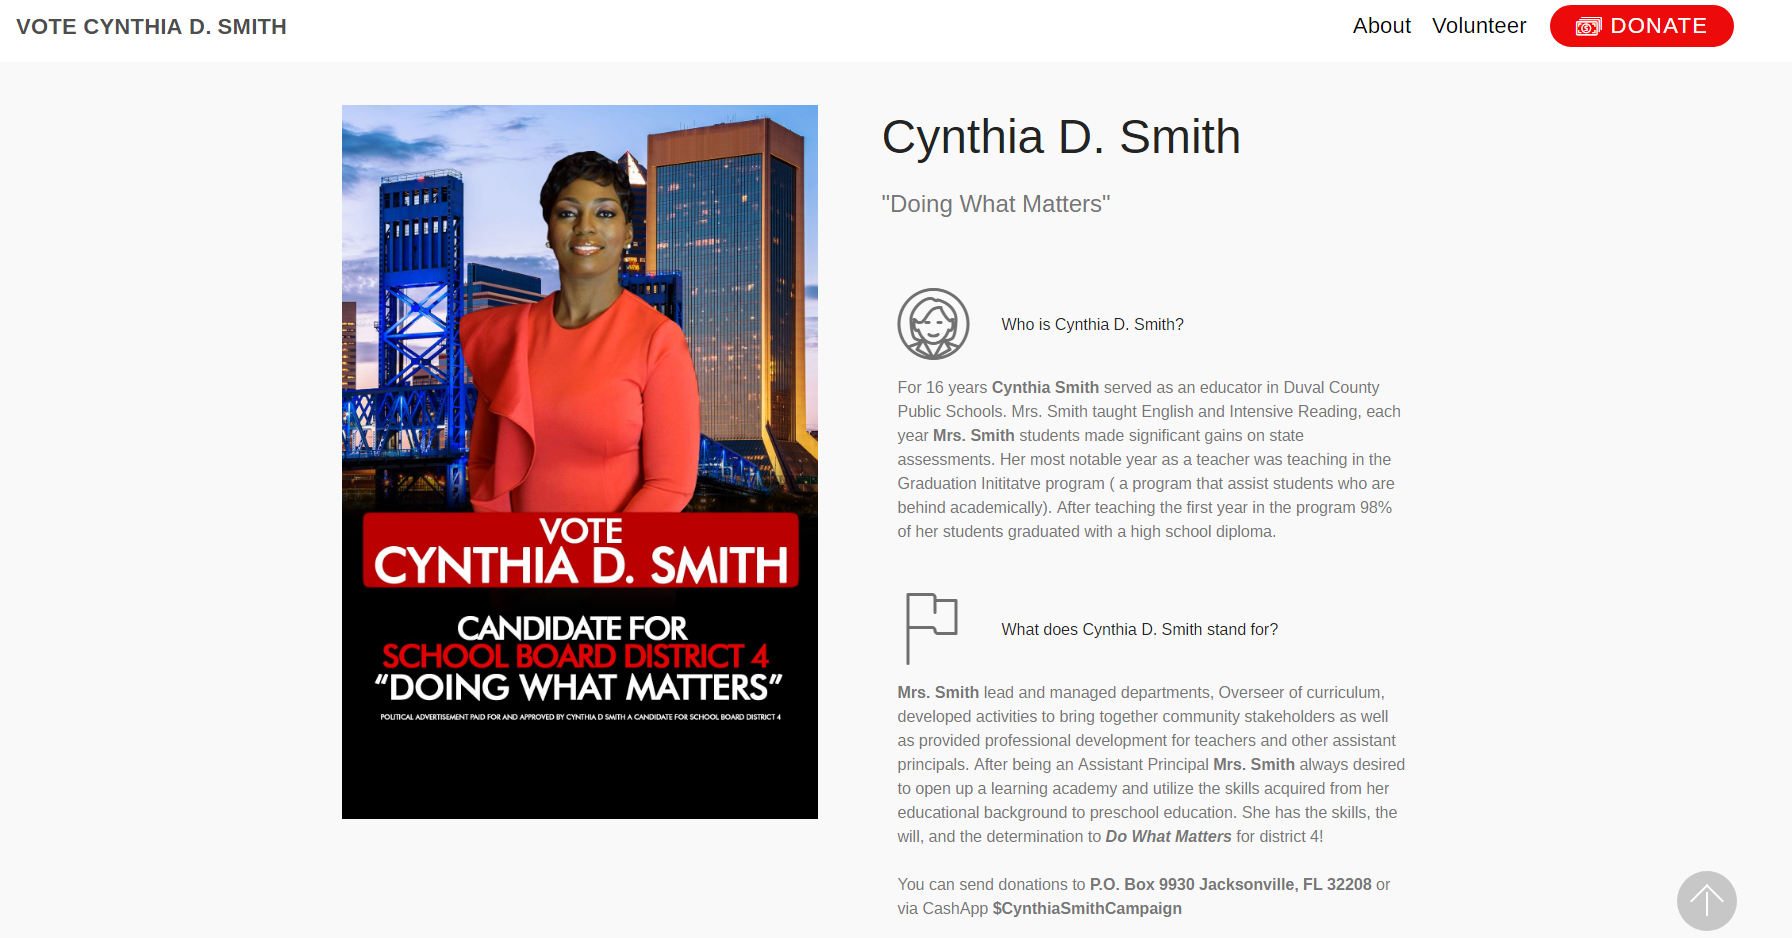 Vote Cynthia D. Smith